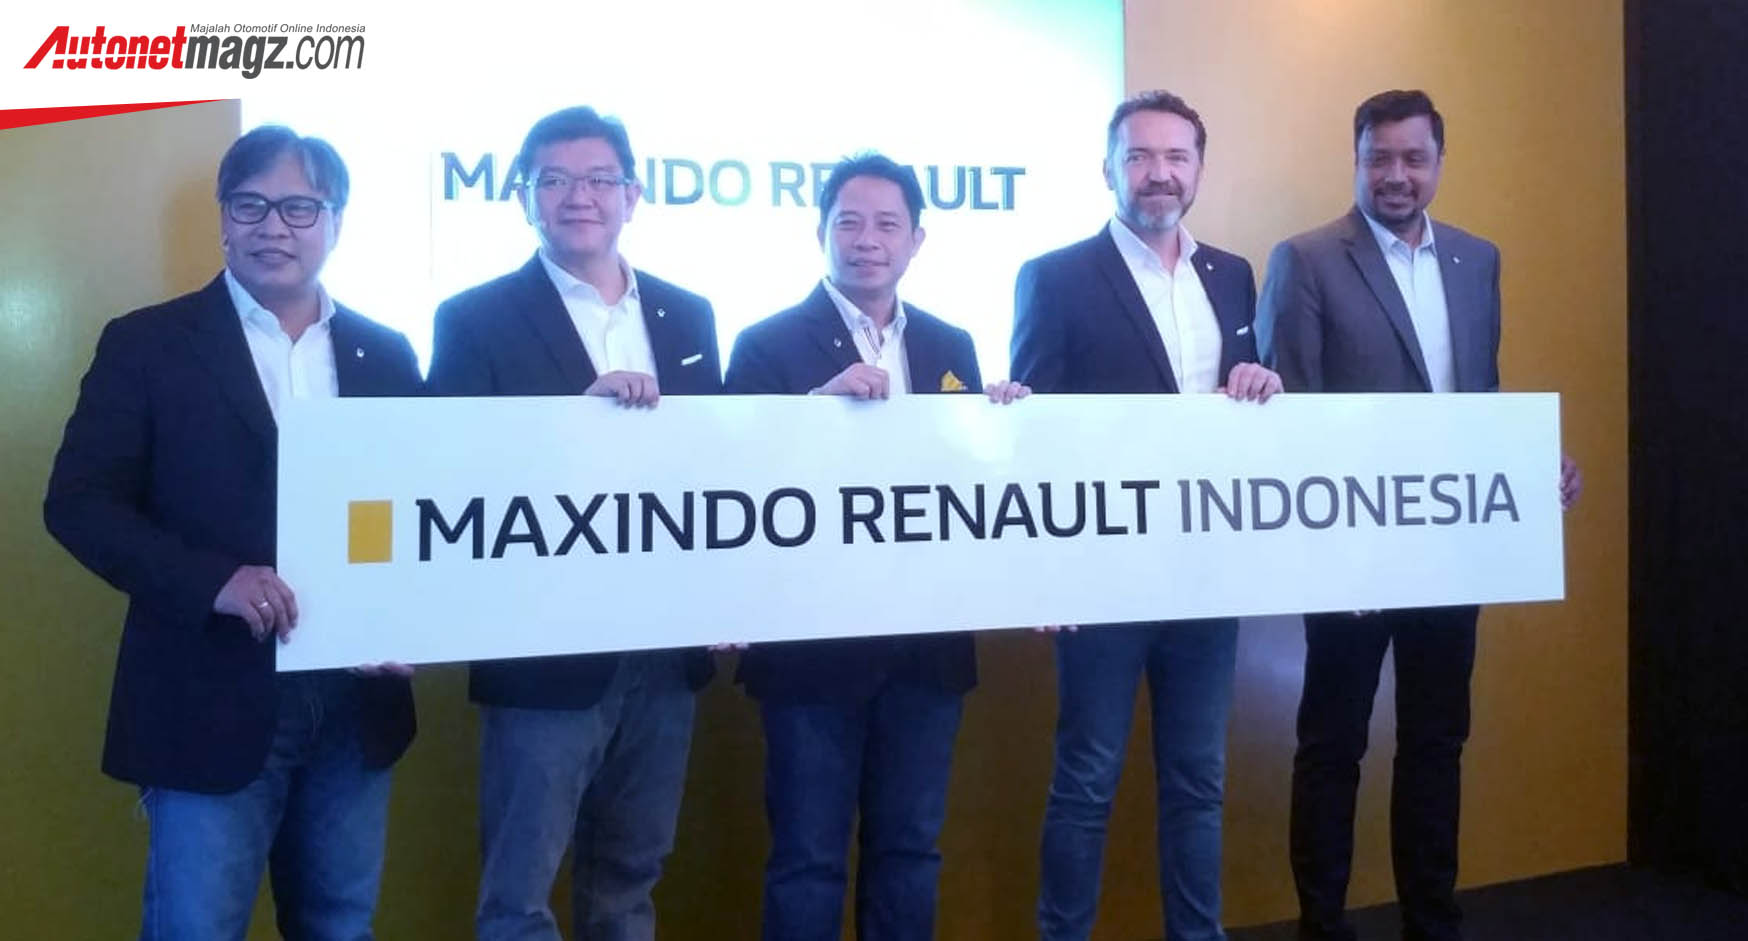 Berita, Maxindo Renault Indonesia: Maxindo Renault Indonesia Jadi APM Baru Renault di Tanah Air